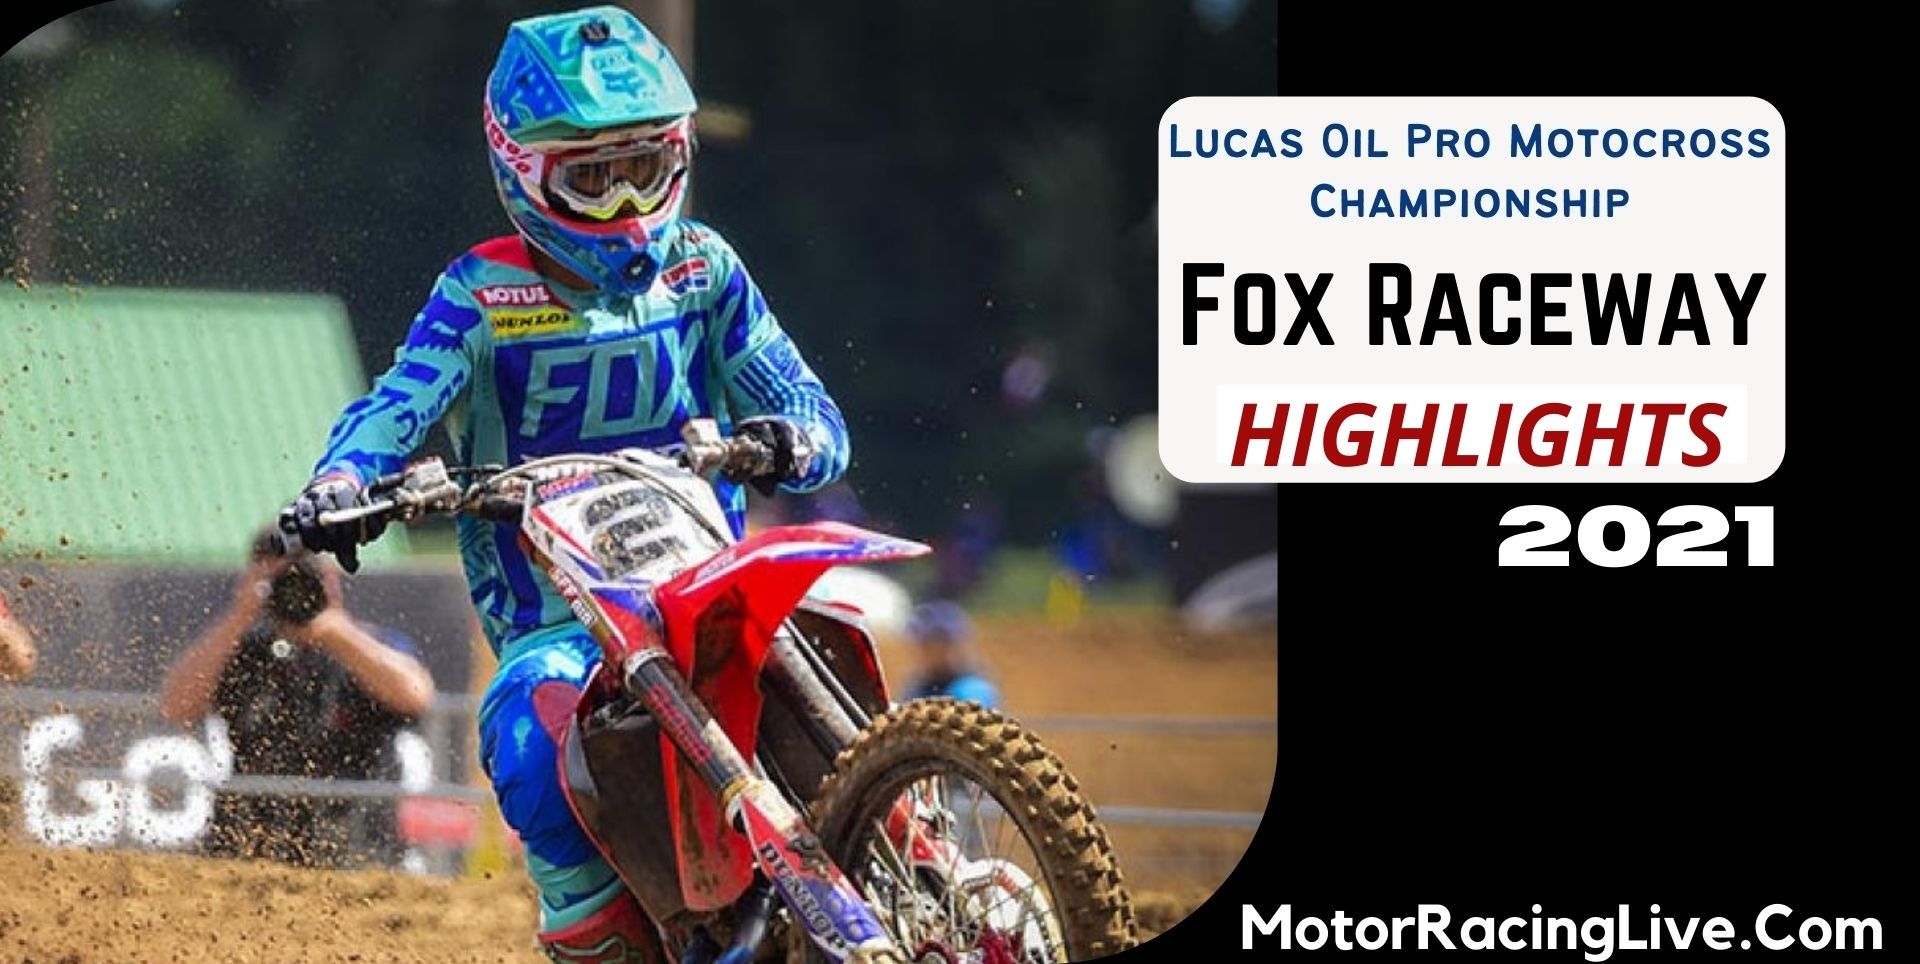 Fox Raceway Highlights 2021 Motocross